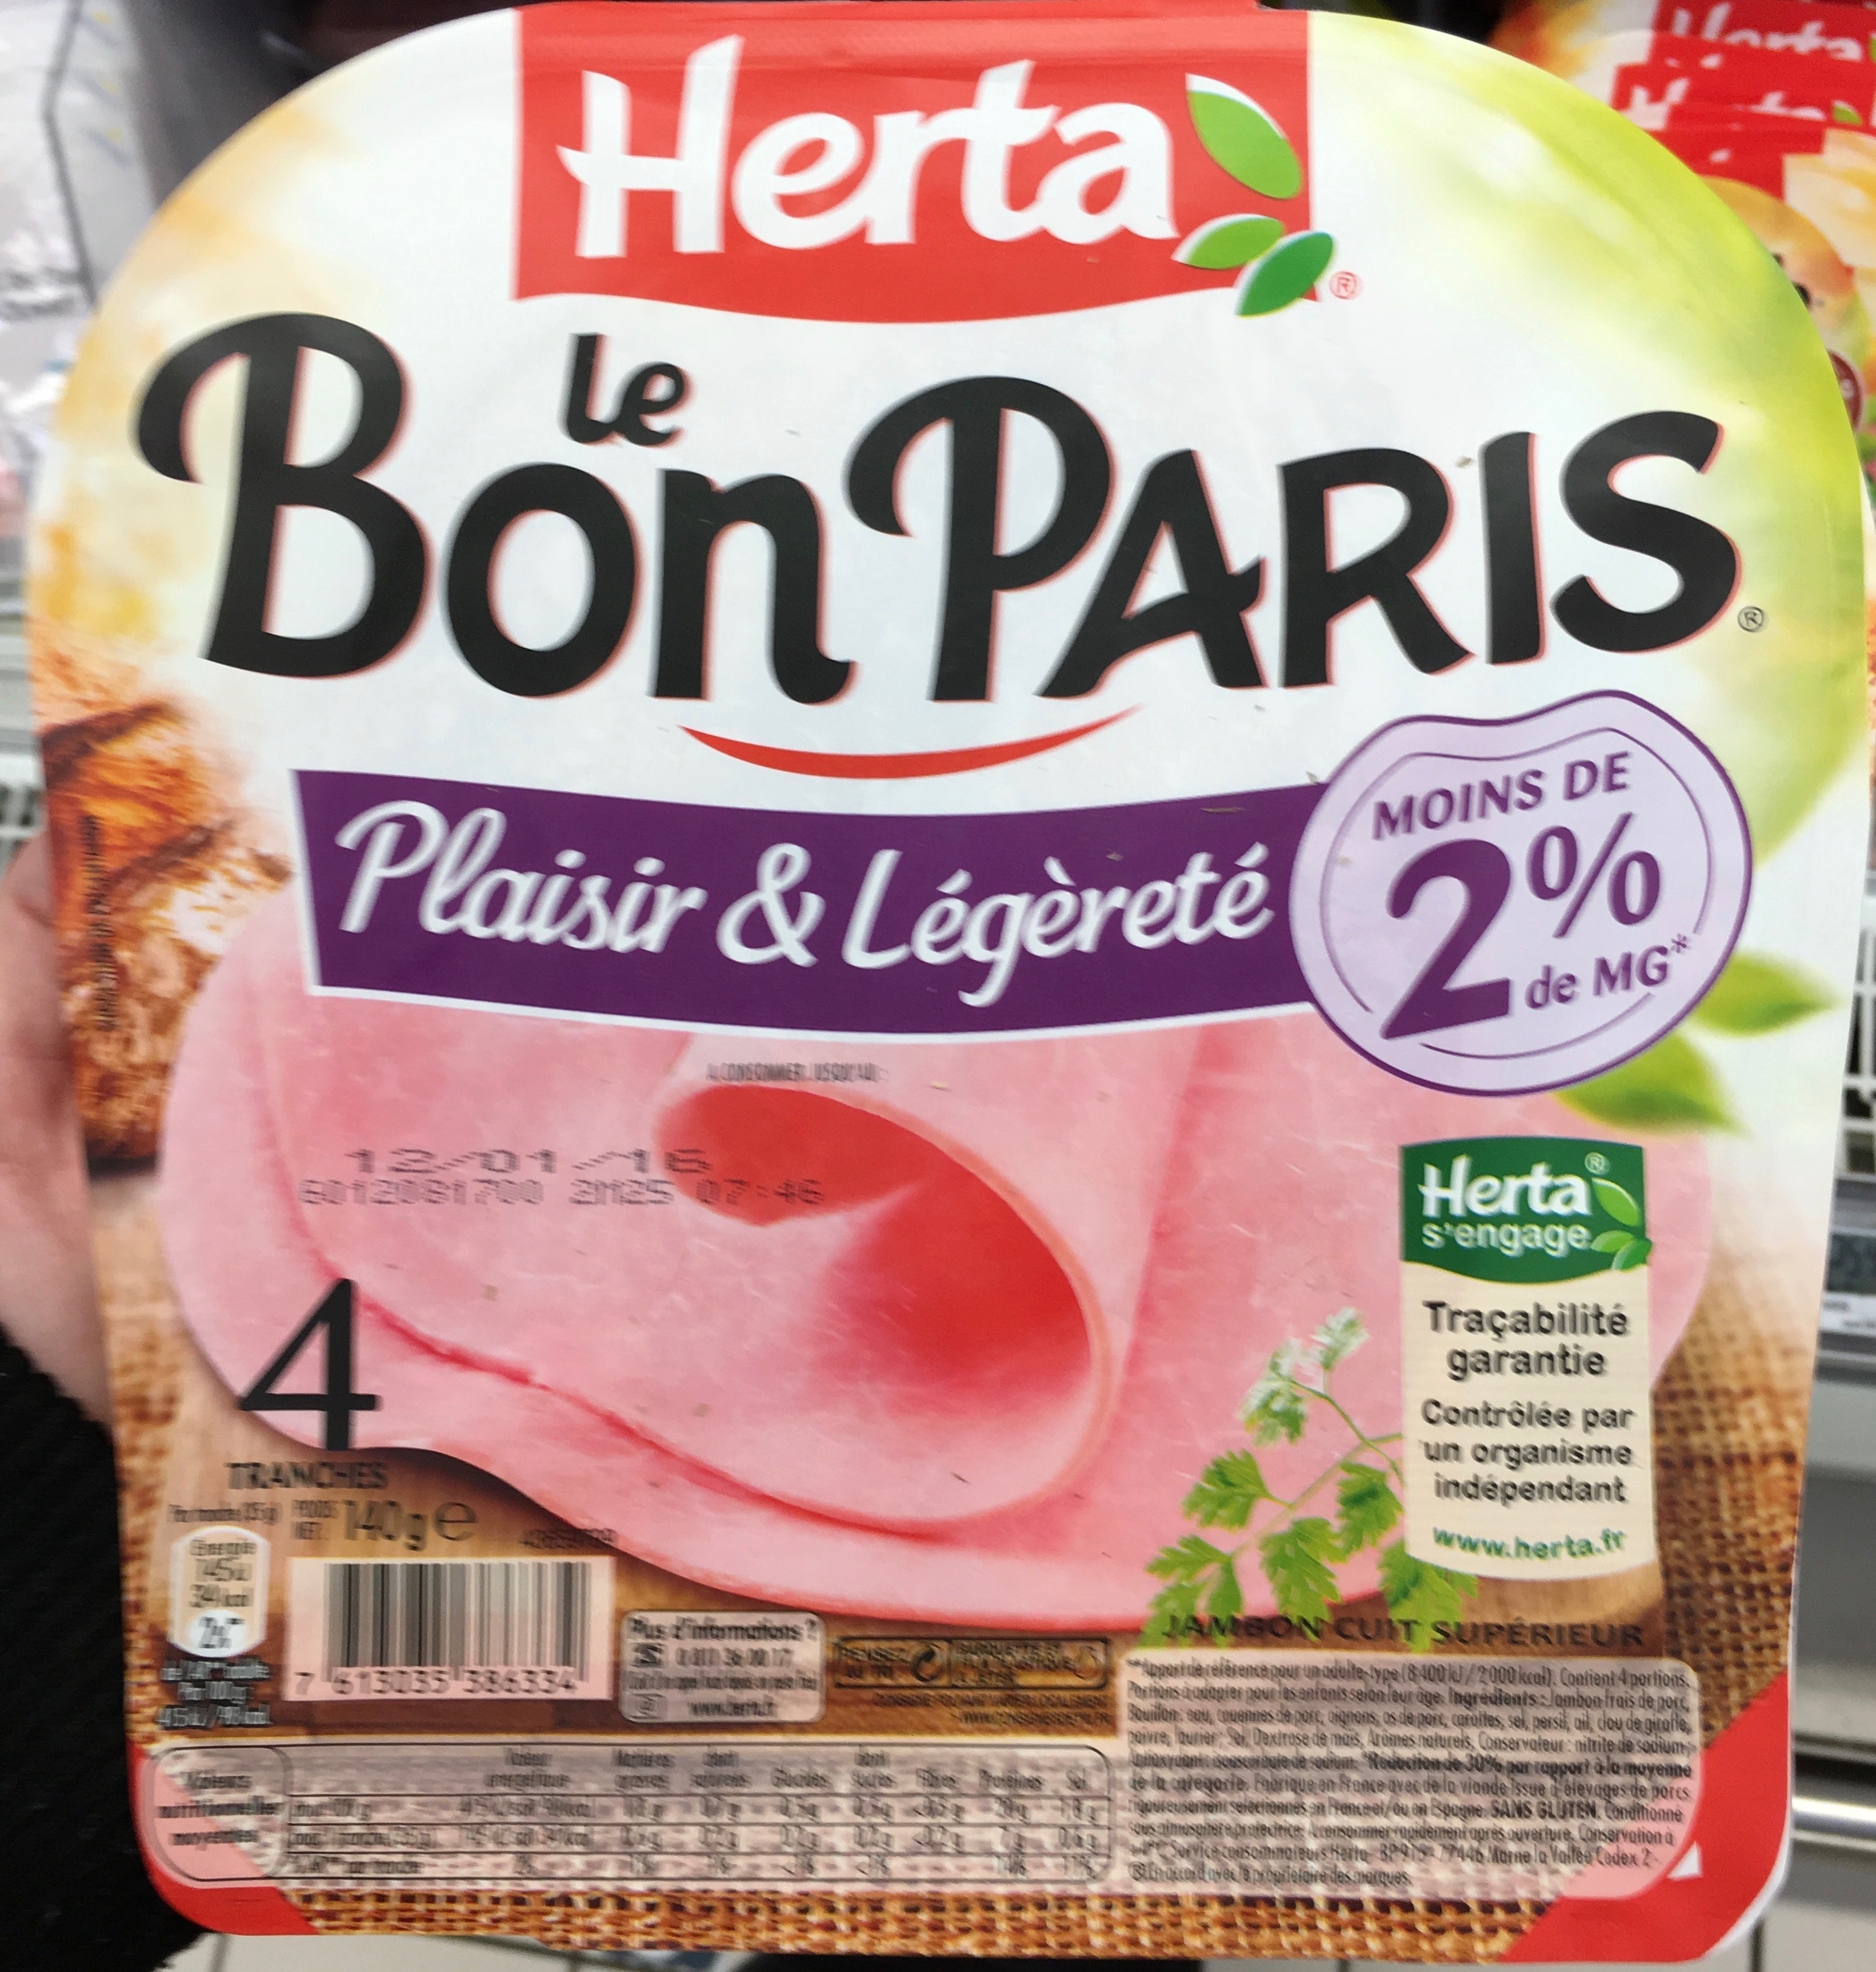 Le Bon Paris Plaisir & Légèreté (Moins de 2% de MG) - Product - fr